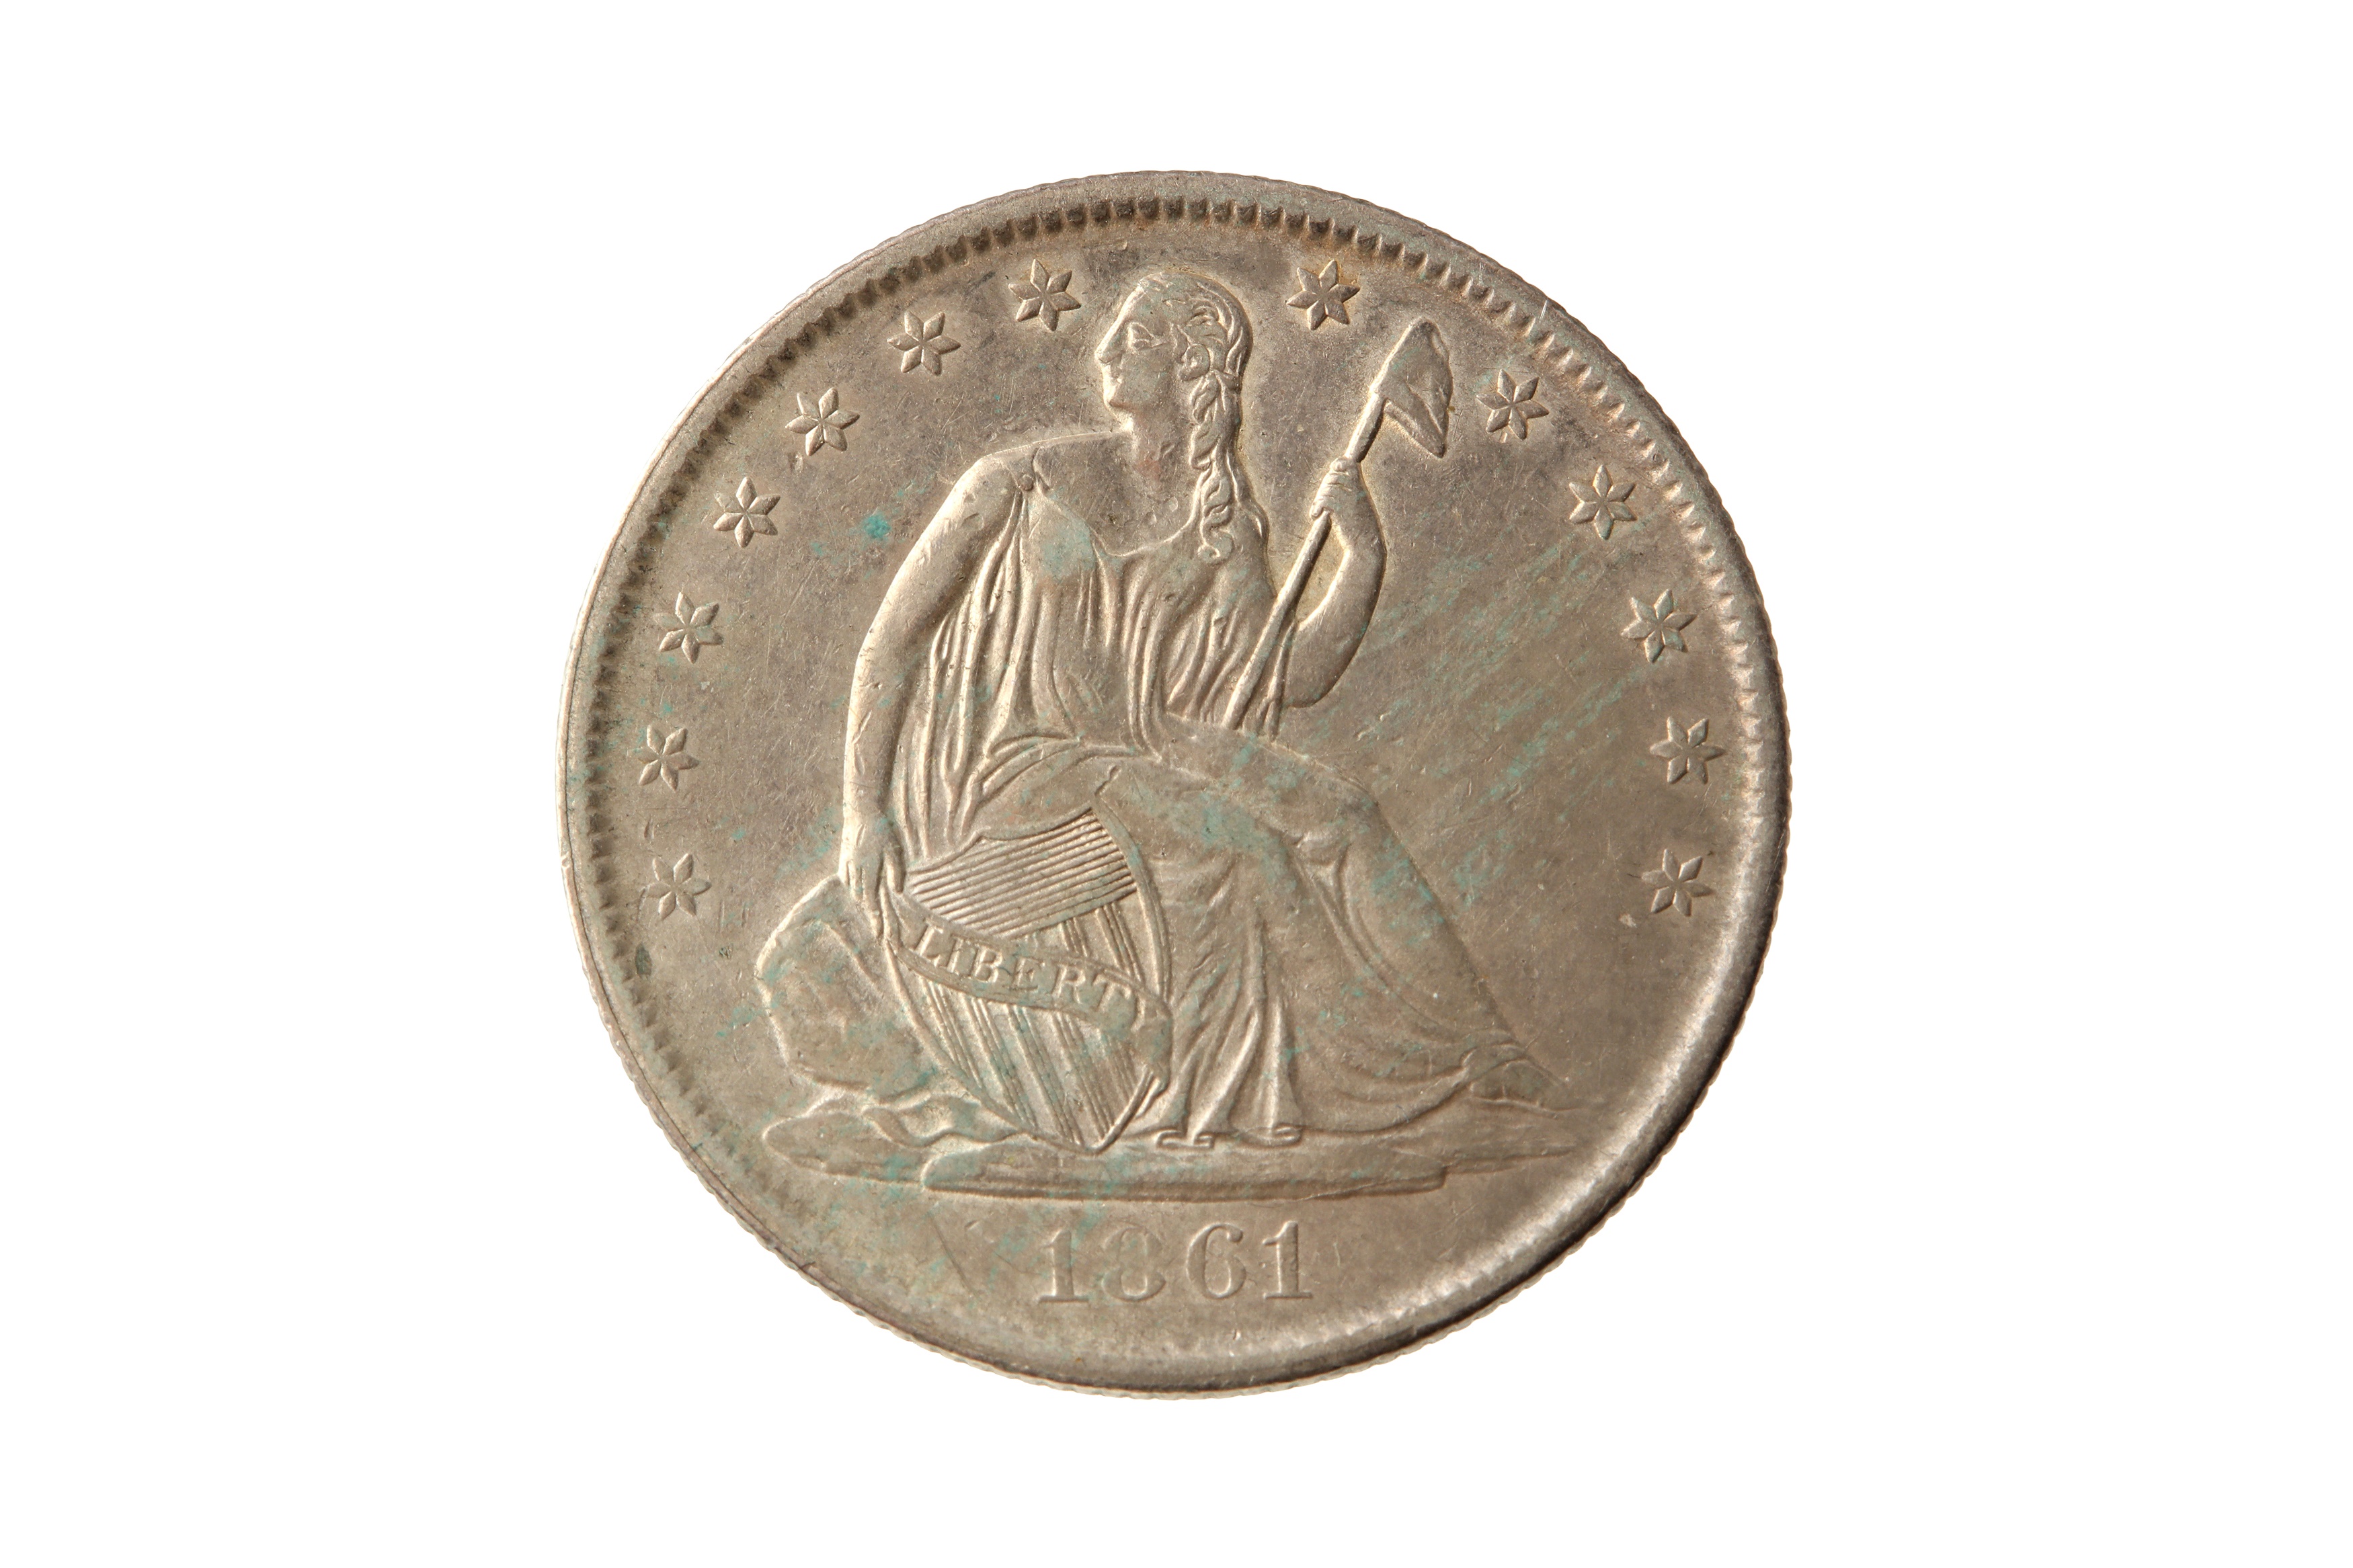 USA, 1861-O 50 CENTS/HALF DOLLAR.